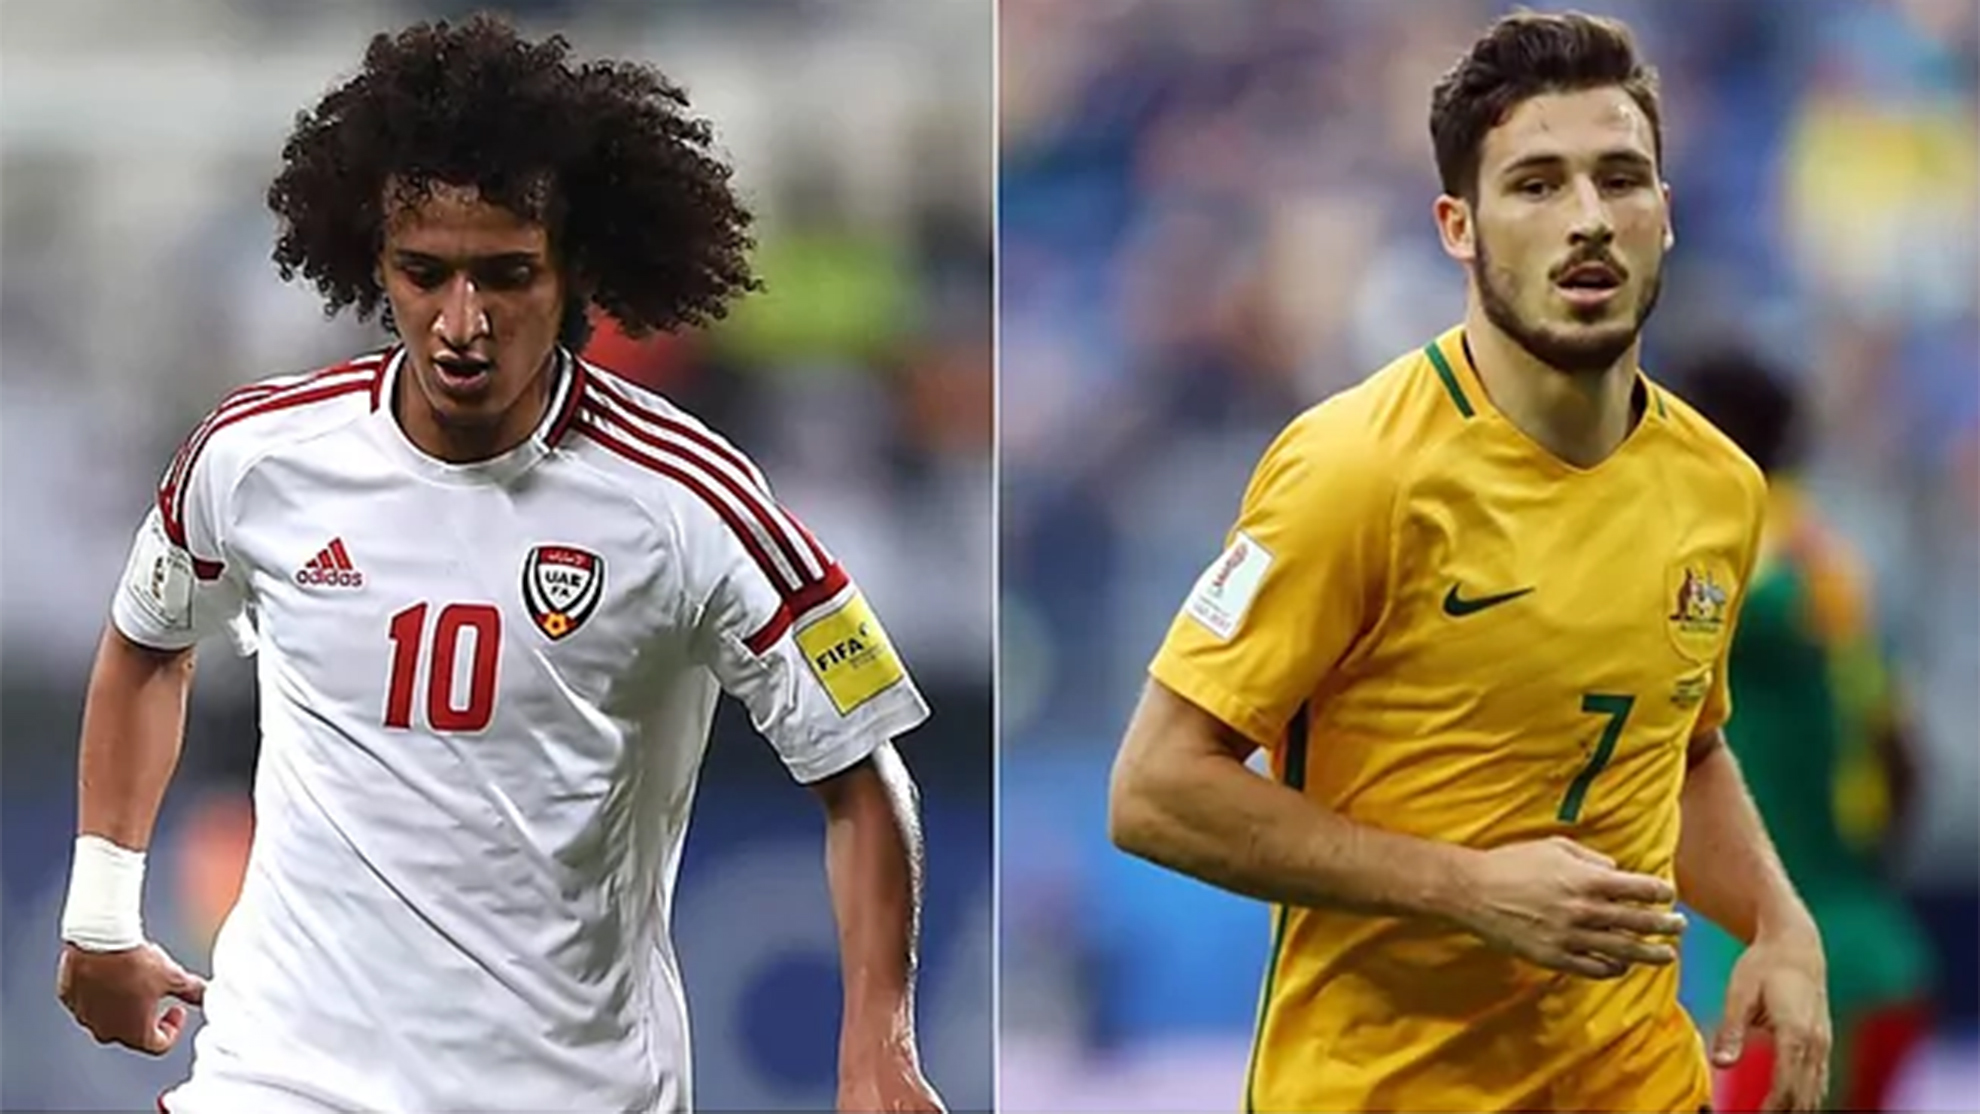 Emiratos Árabes Unidos vs Australia, en vivo juego de repesca para la Copa del Mundo de Qatar 2022